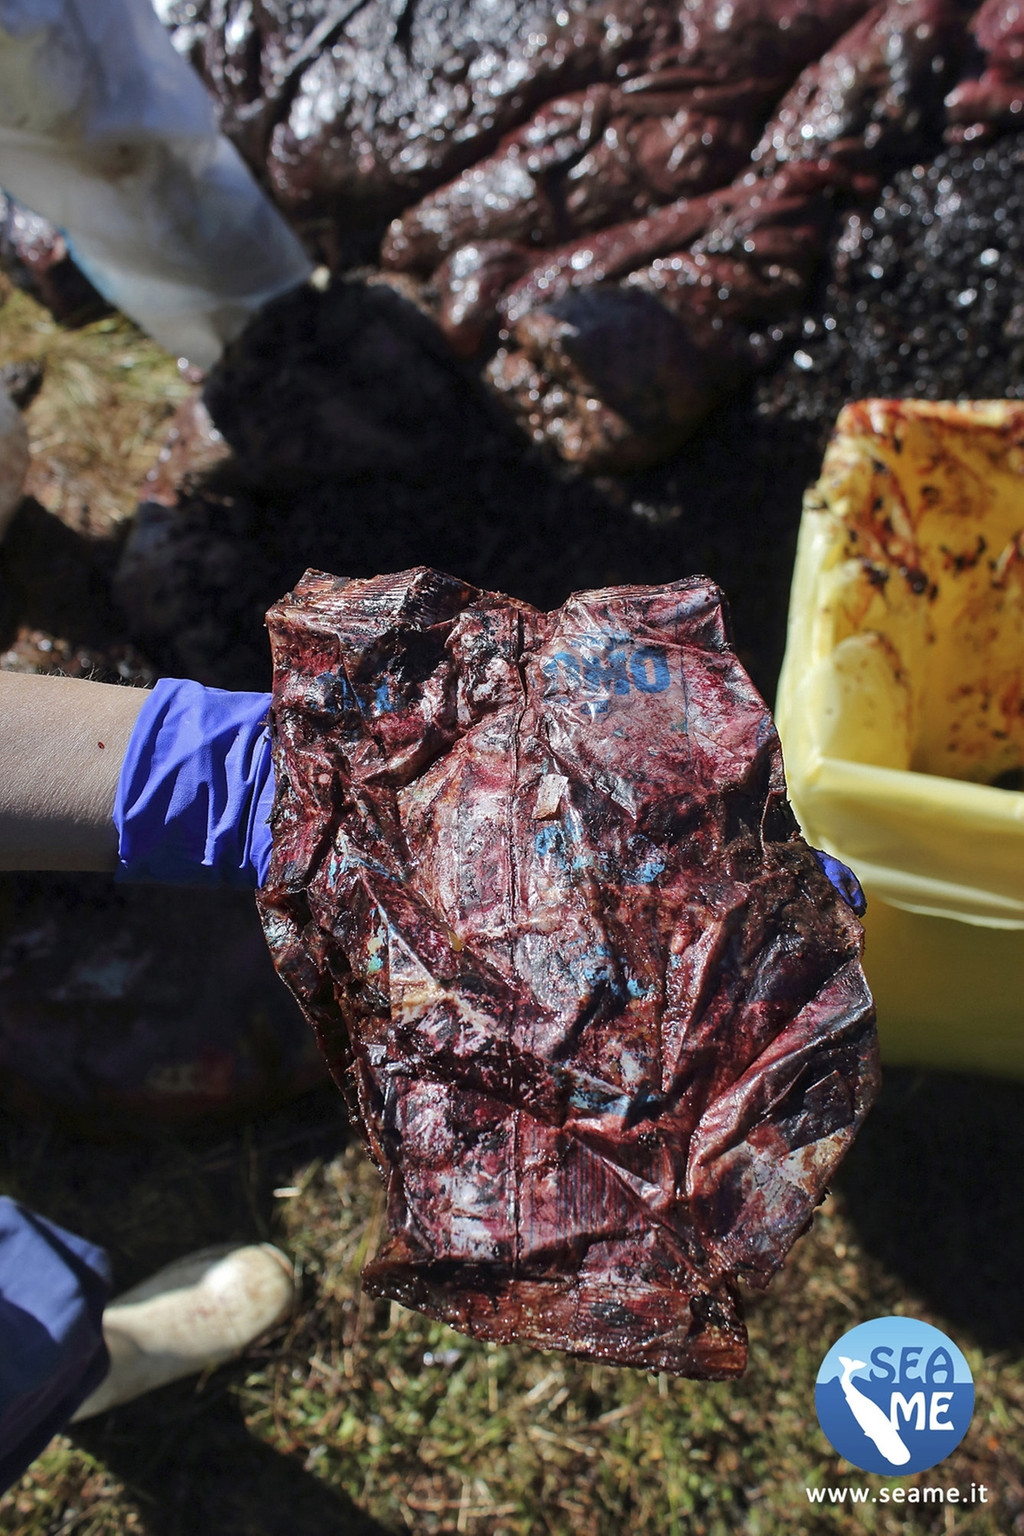 Anfang April ist ein Pottwal vor Sardinien entdeckt worden - mit 22 Kilogramm Plastik im Magen.